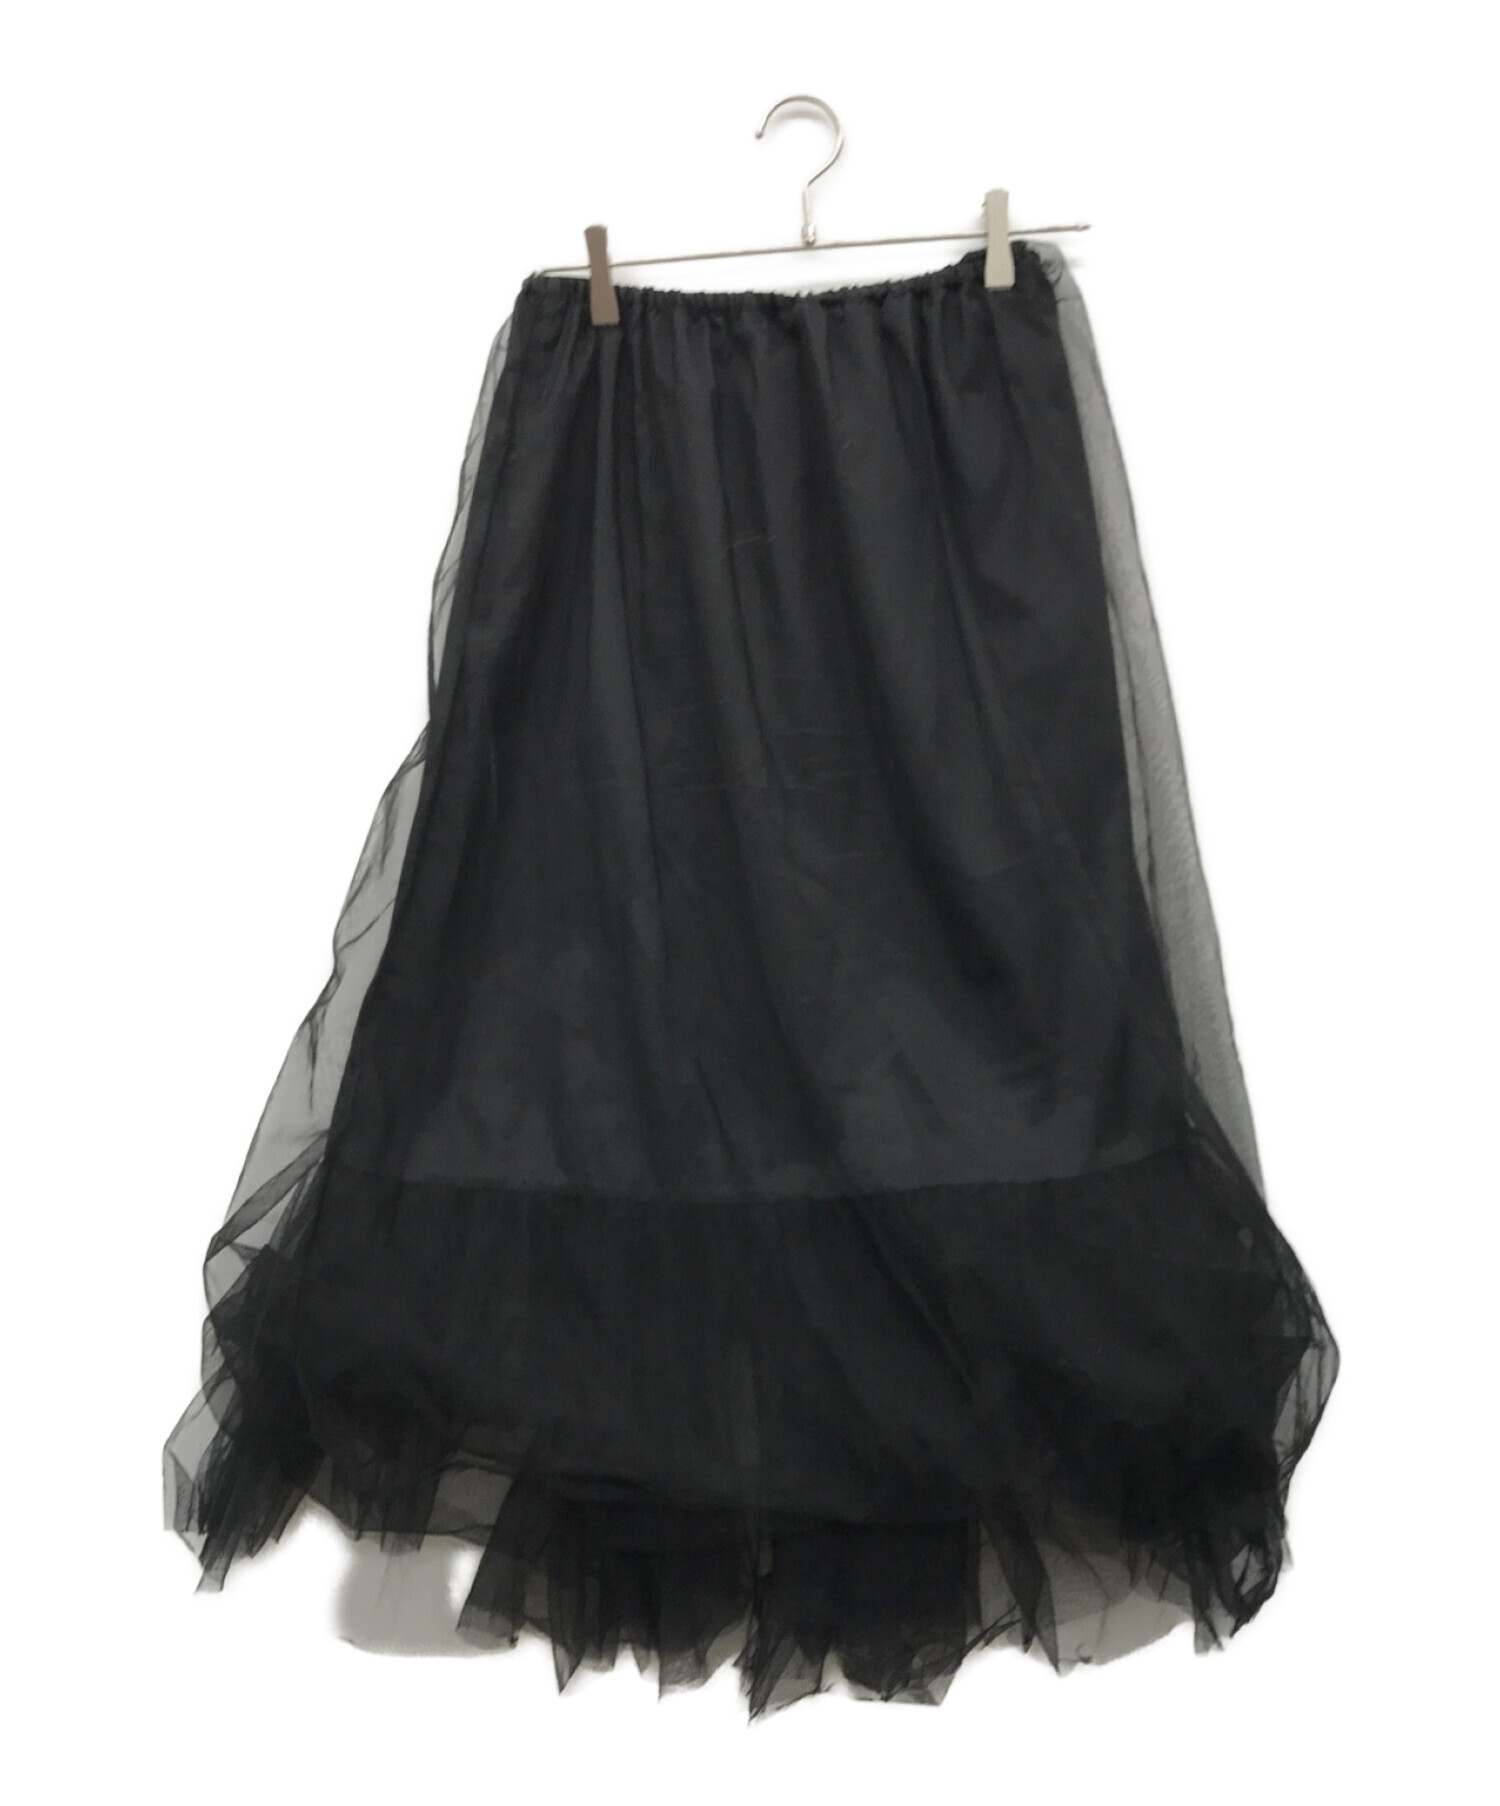 SLOBE IENA (スローブ イエナ) レイヤードチュチュスカート ブラック サイズ:38